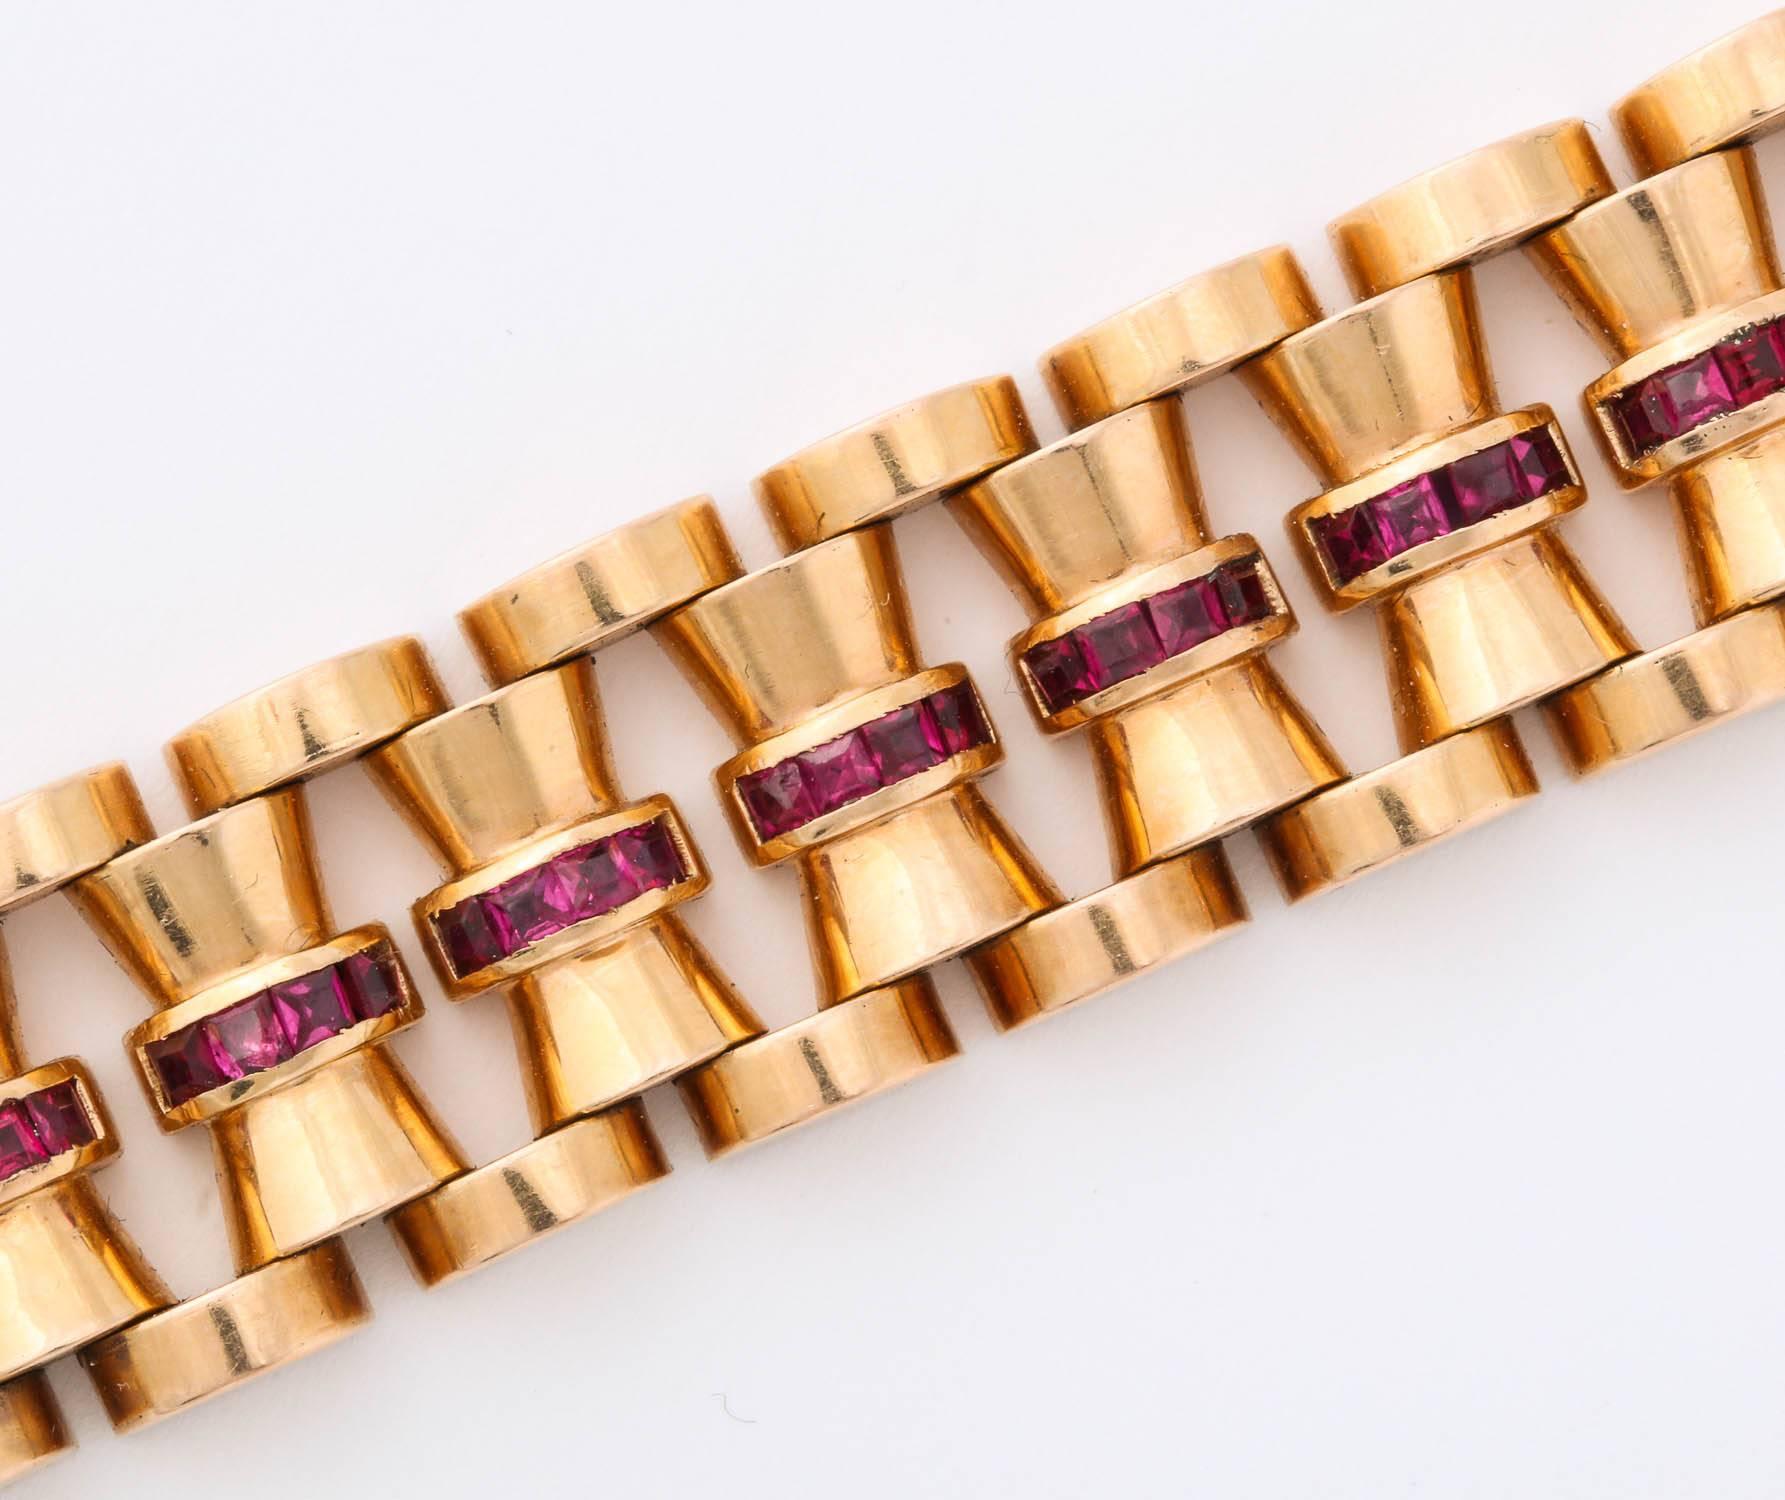 ruby bracelets